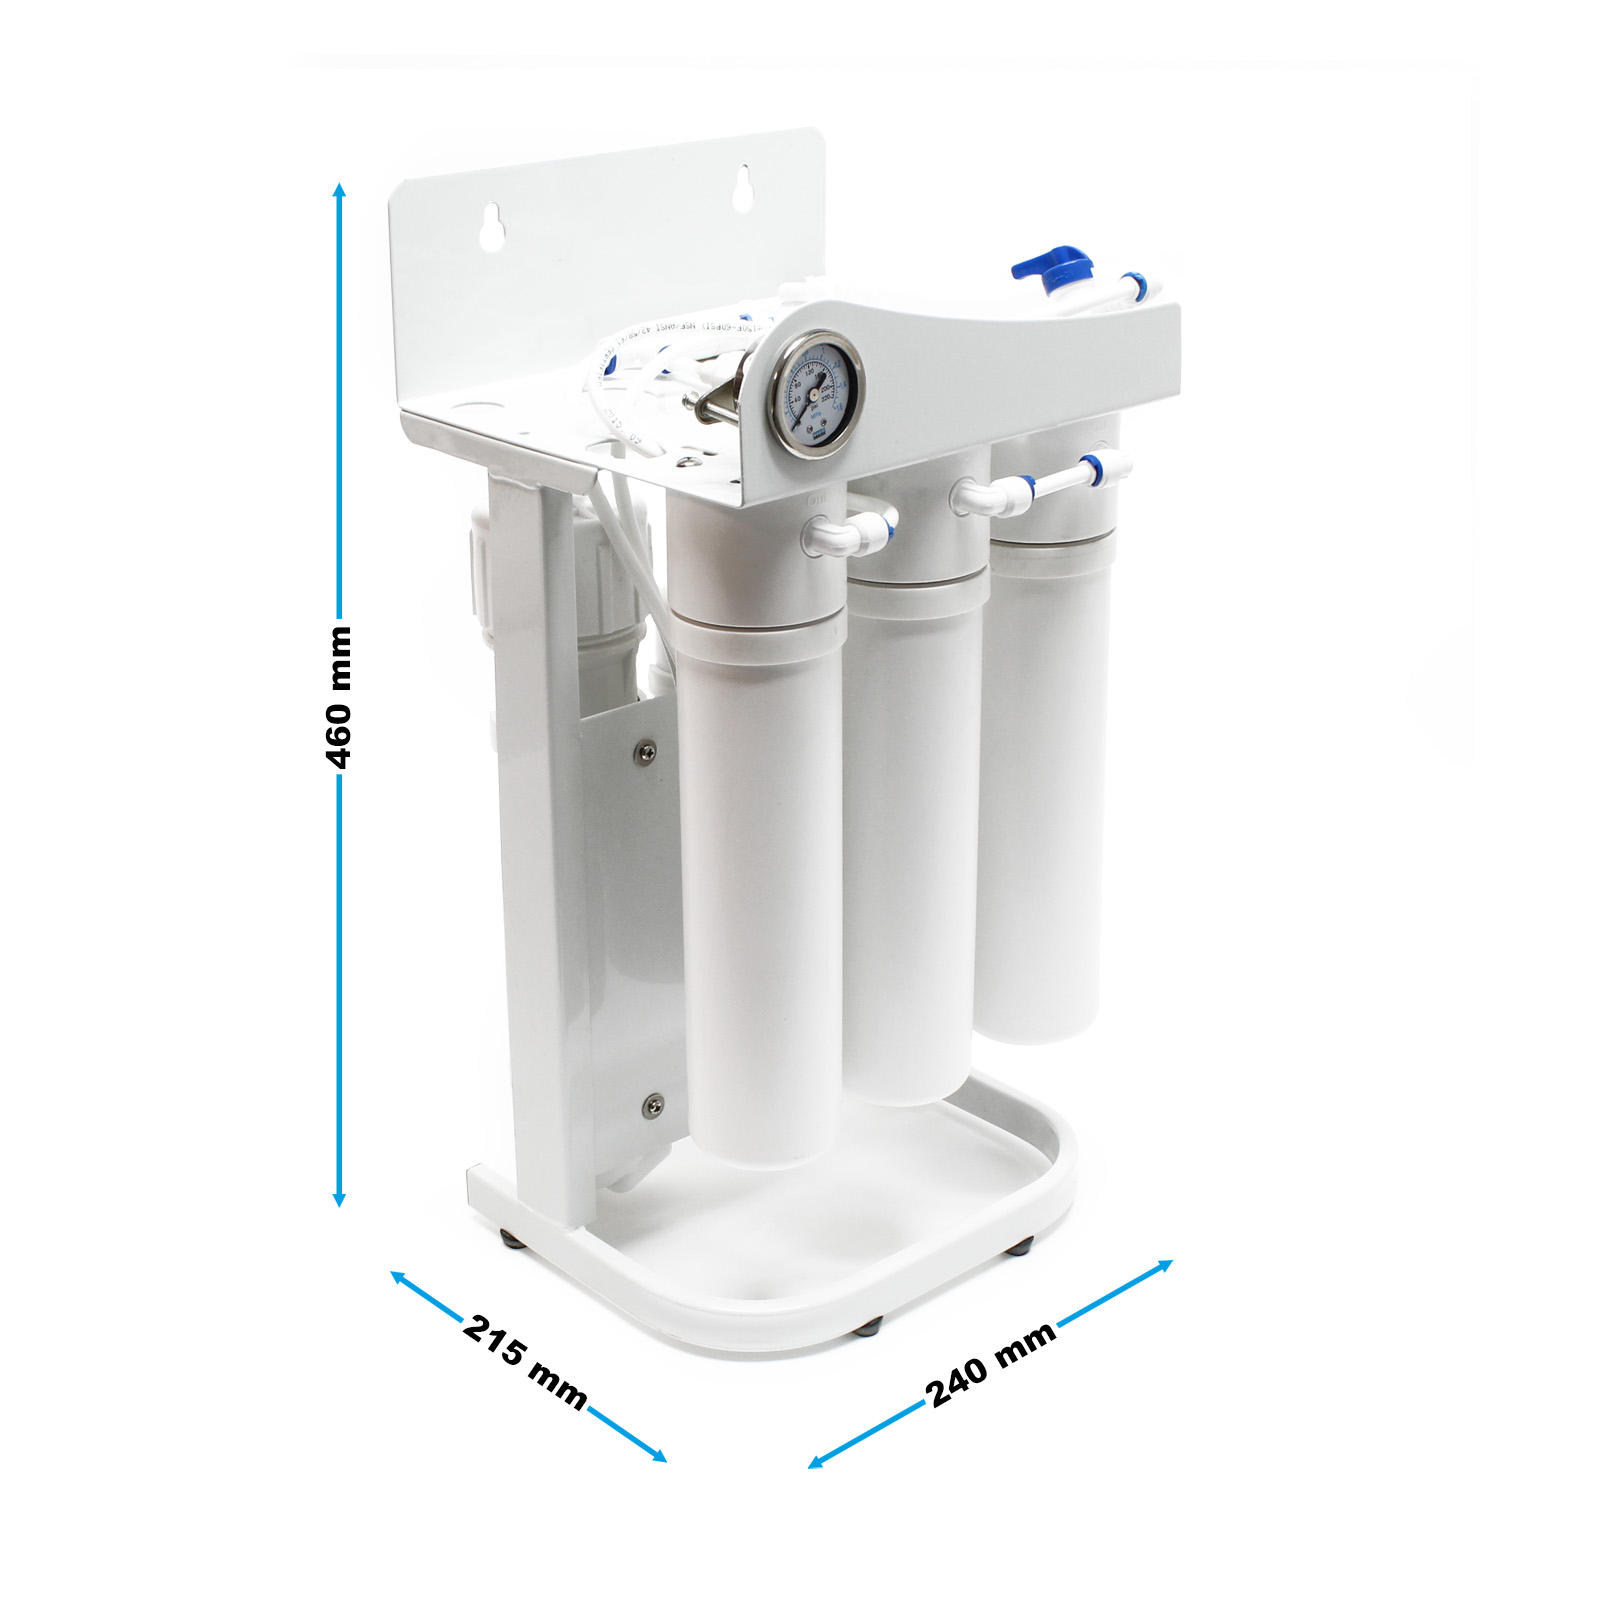 Filtro Purificador De Agua Osmosis Inversa 5 Etapas con bomba